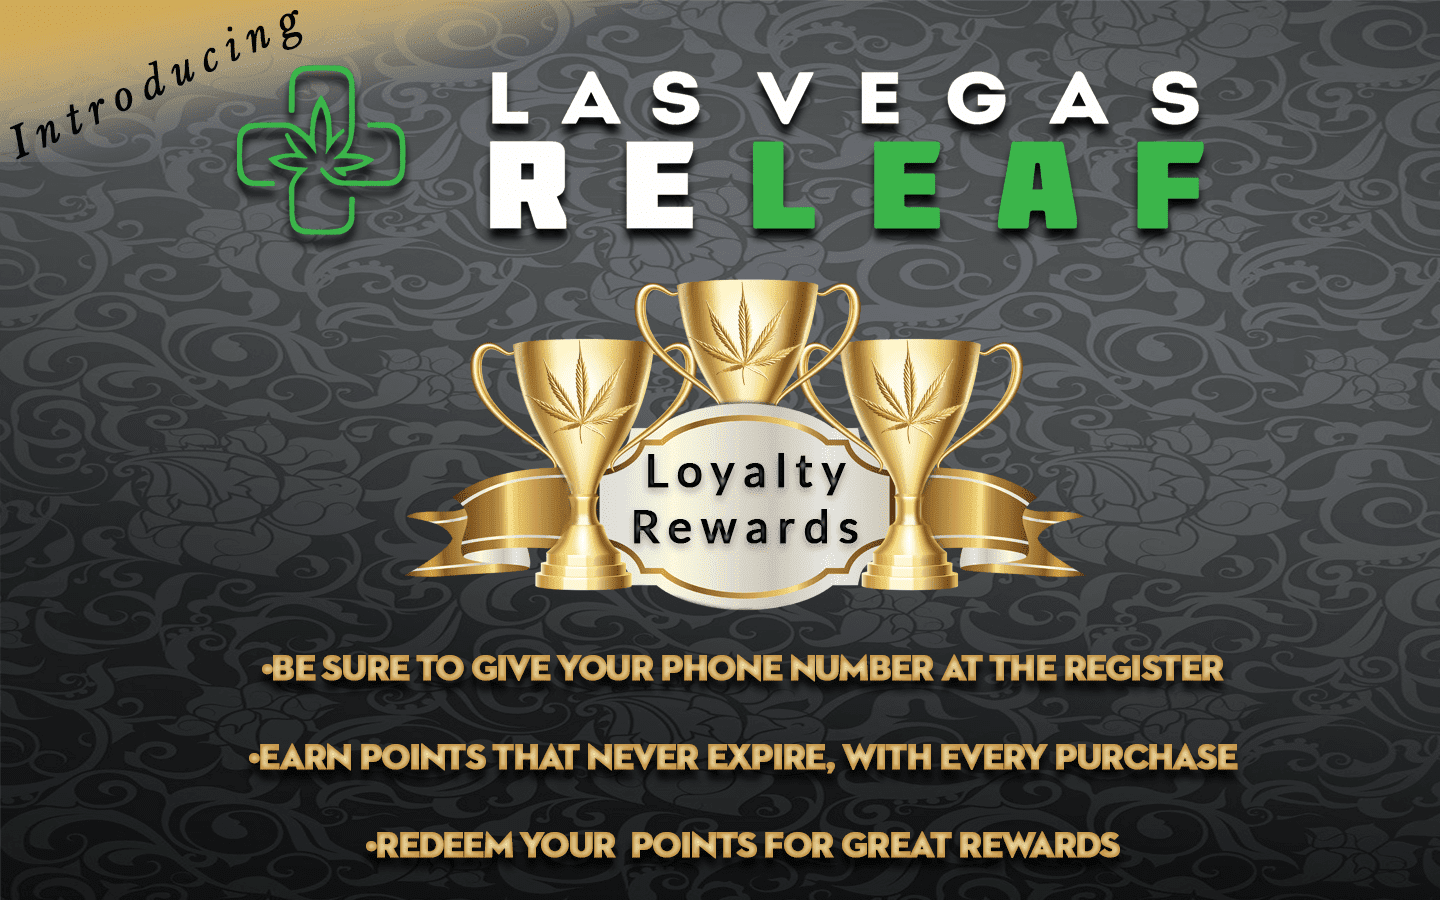 Loyalty Rewards!